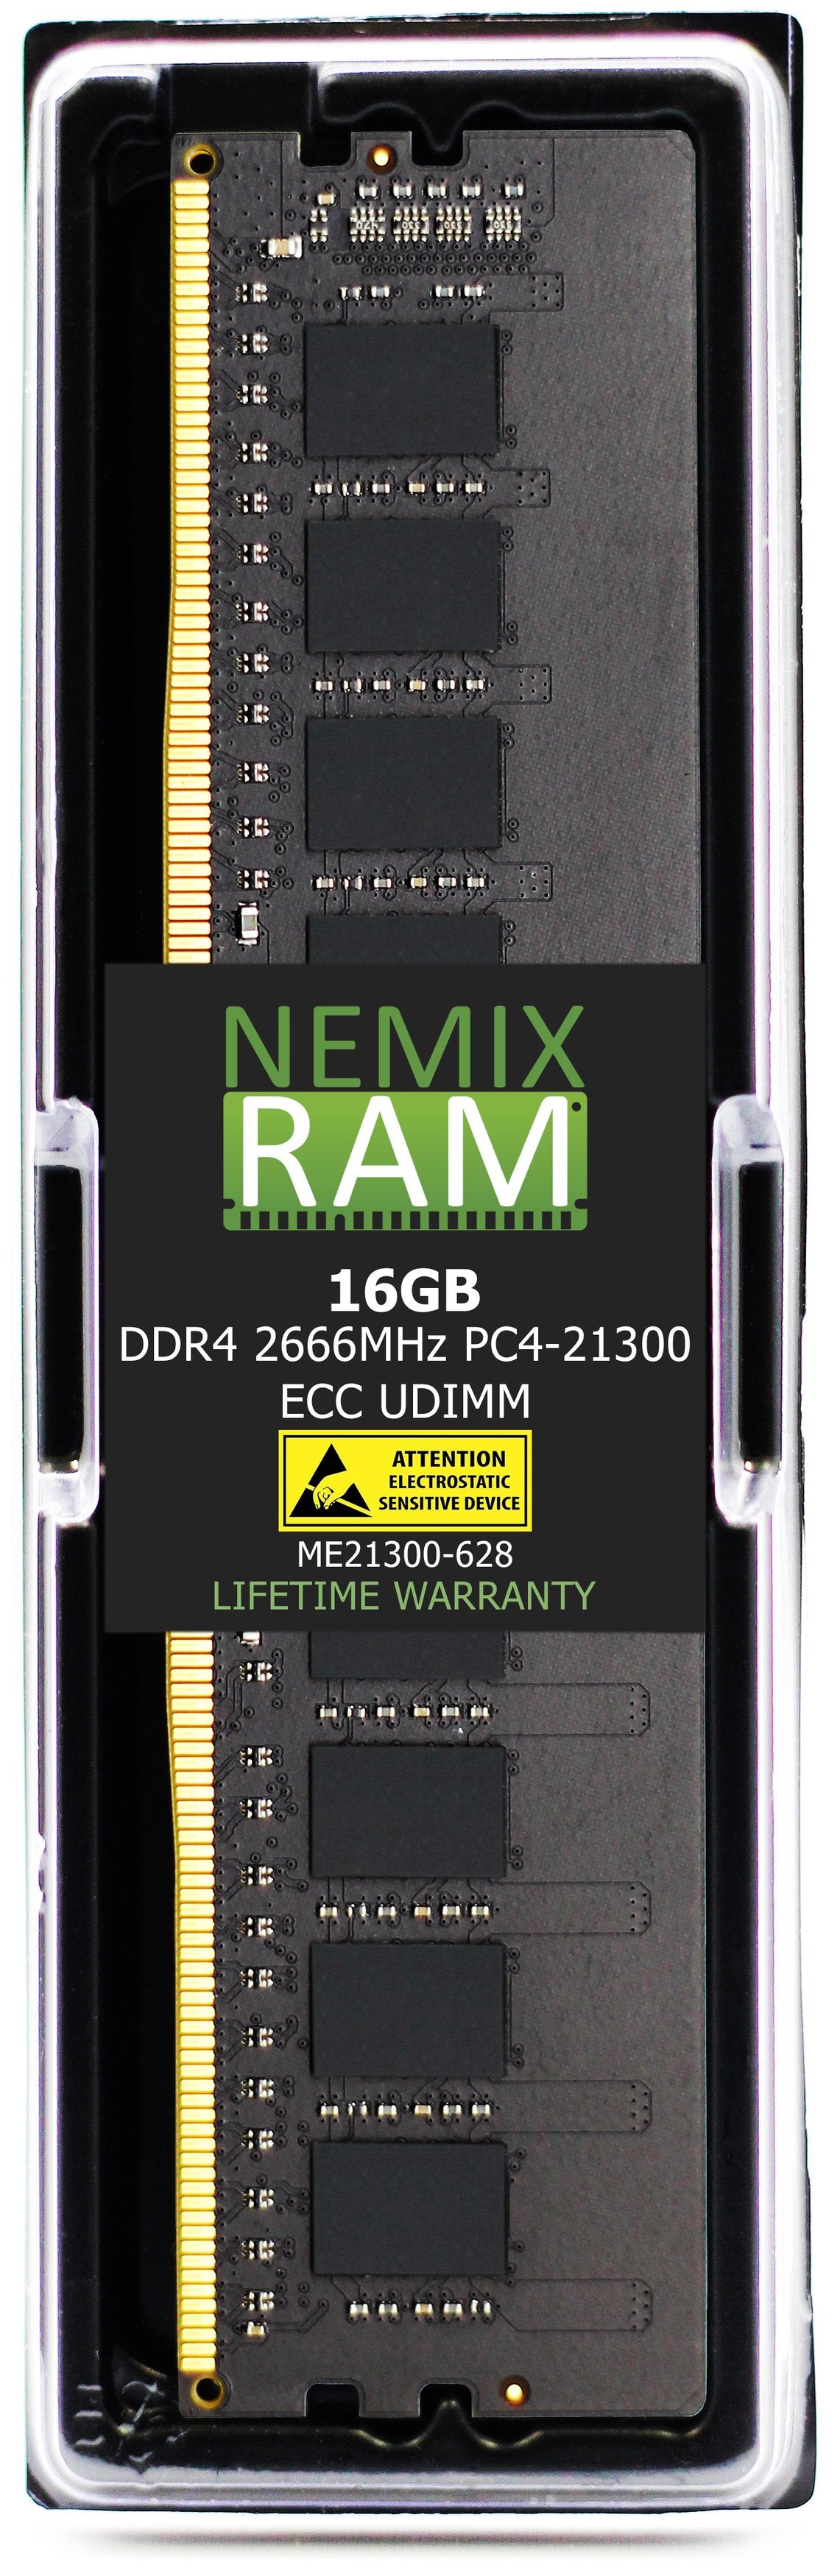 16GB DDR4 2666MHZ PC4-21300 ECC UDIMM Compatible with Supermicro MEM-DR416L-HL01-EU26